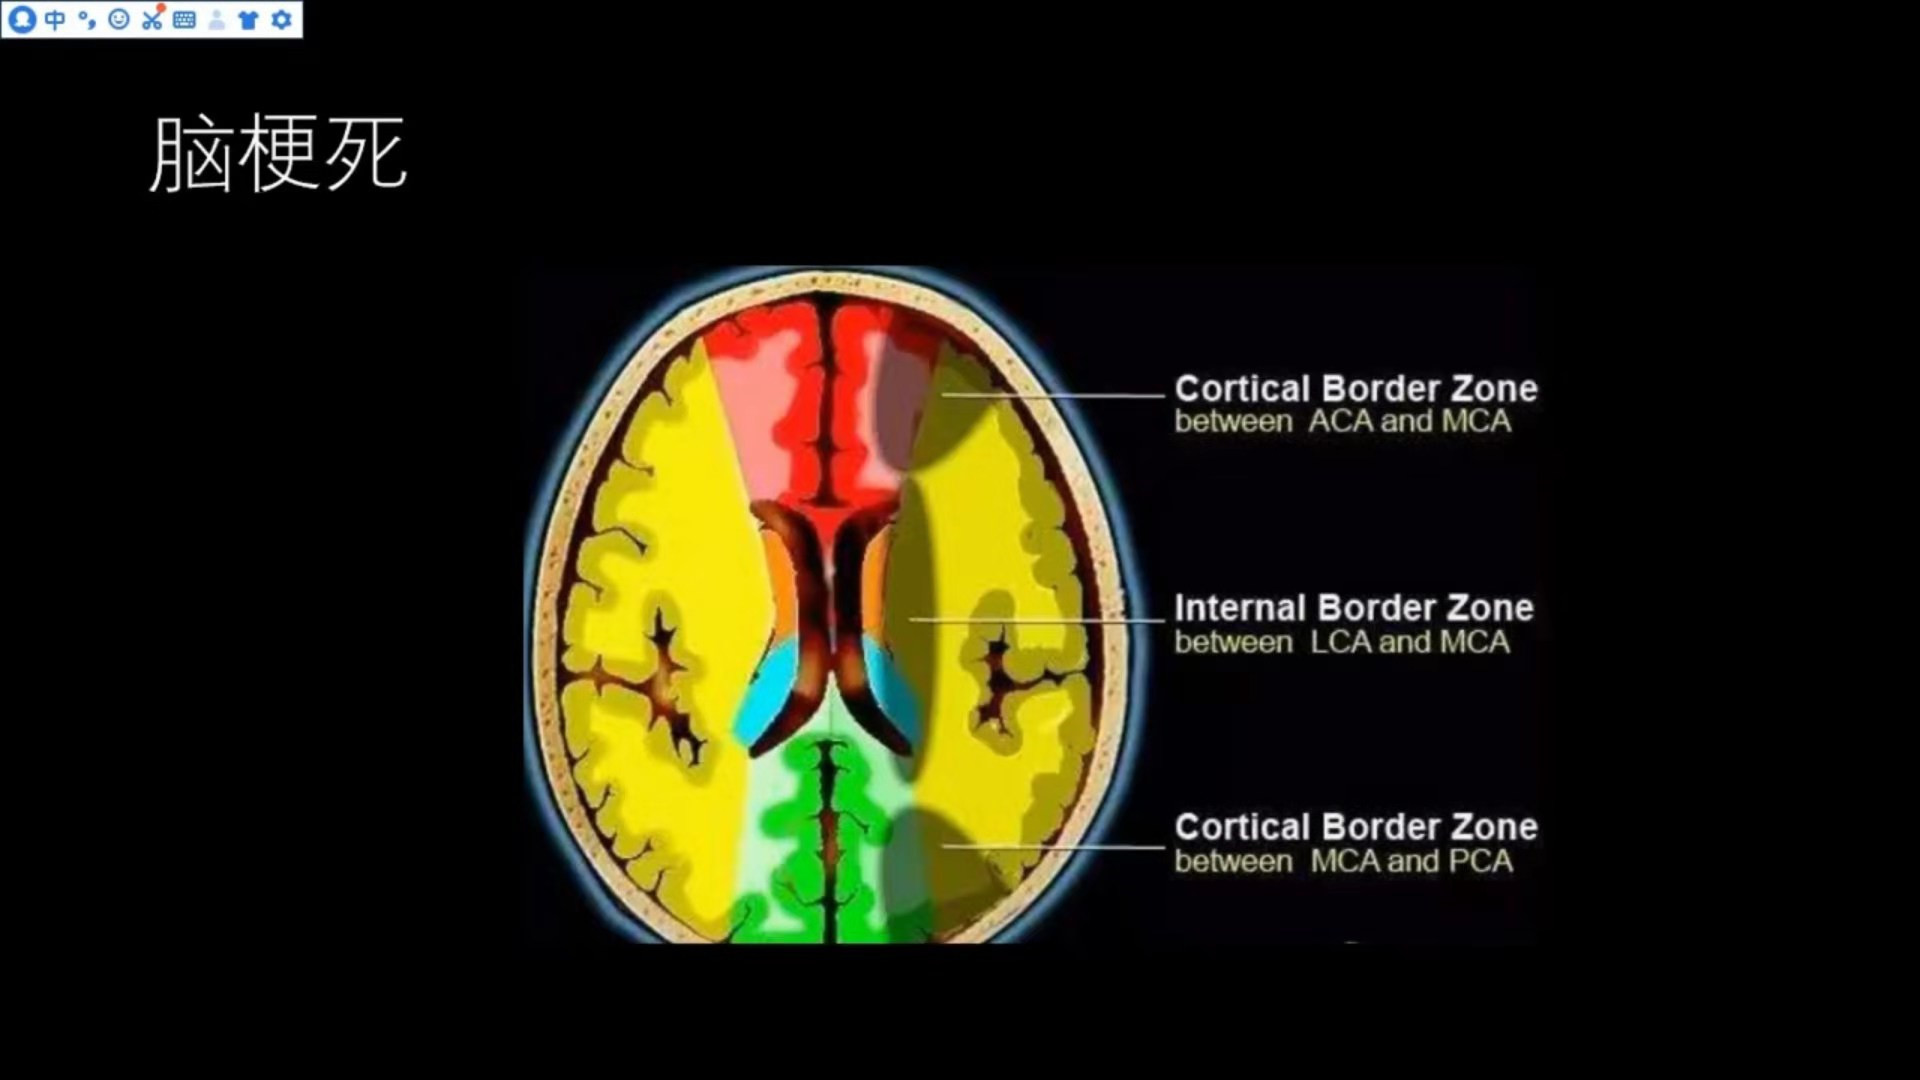 常见脑<font color="red">血管</font>疾病的MRI表现